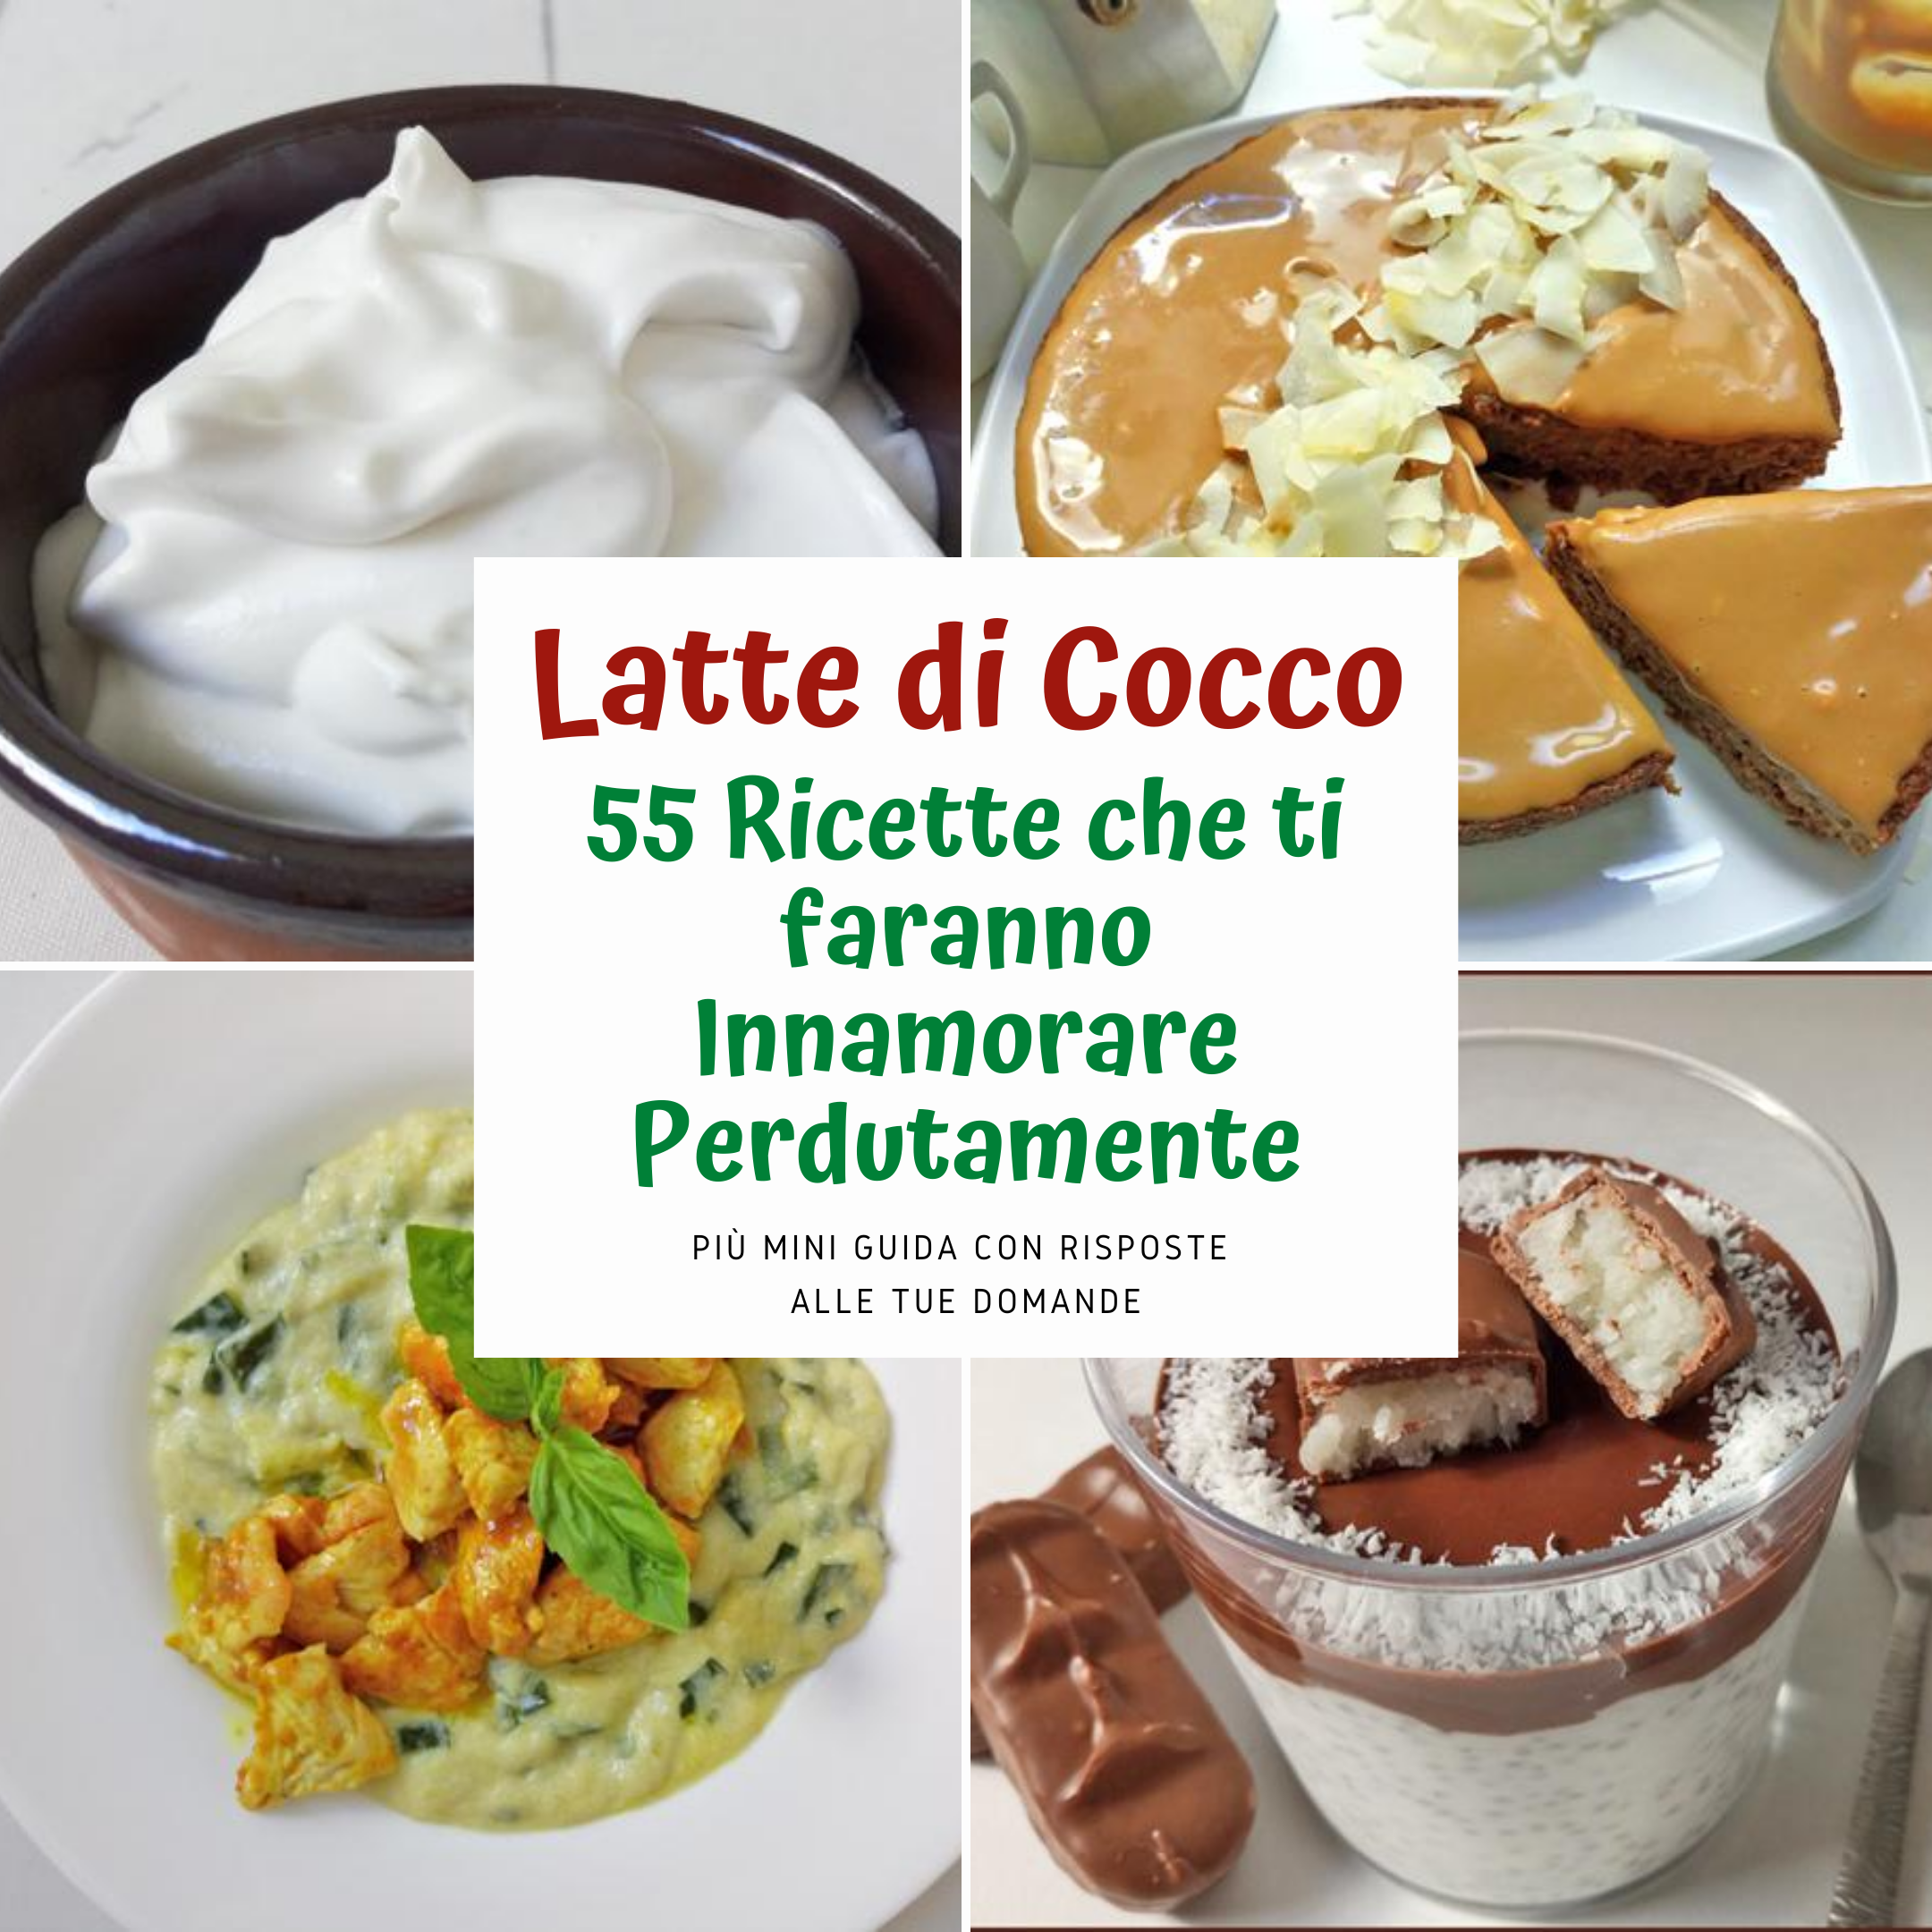 Latte di Cocco in Lattina 55 Ricette che Amerai Perdutamente